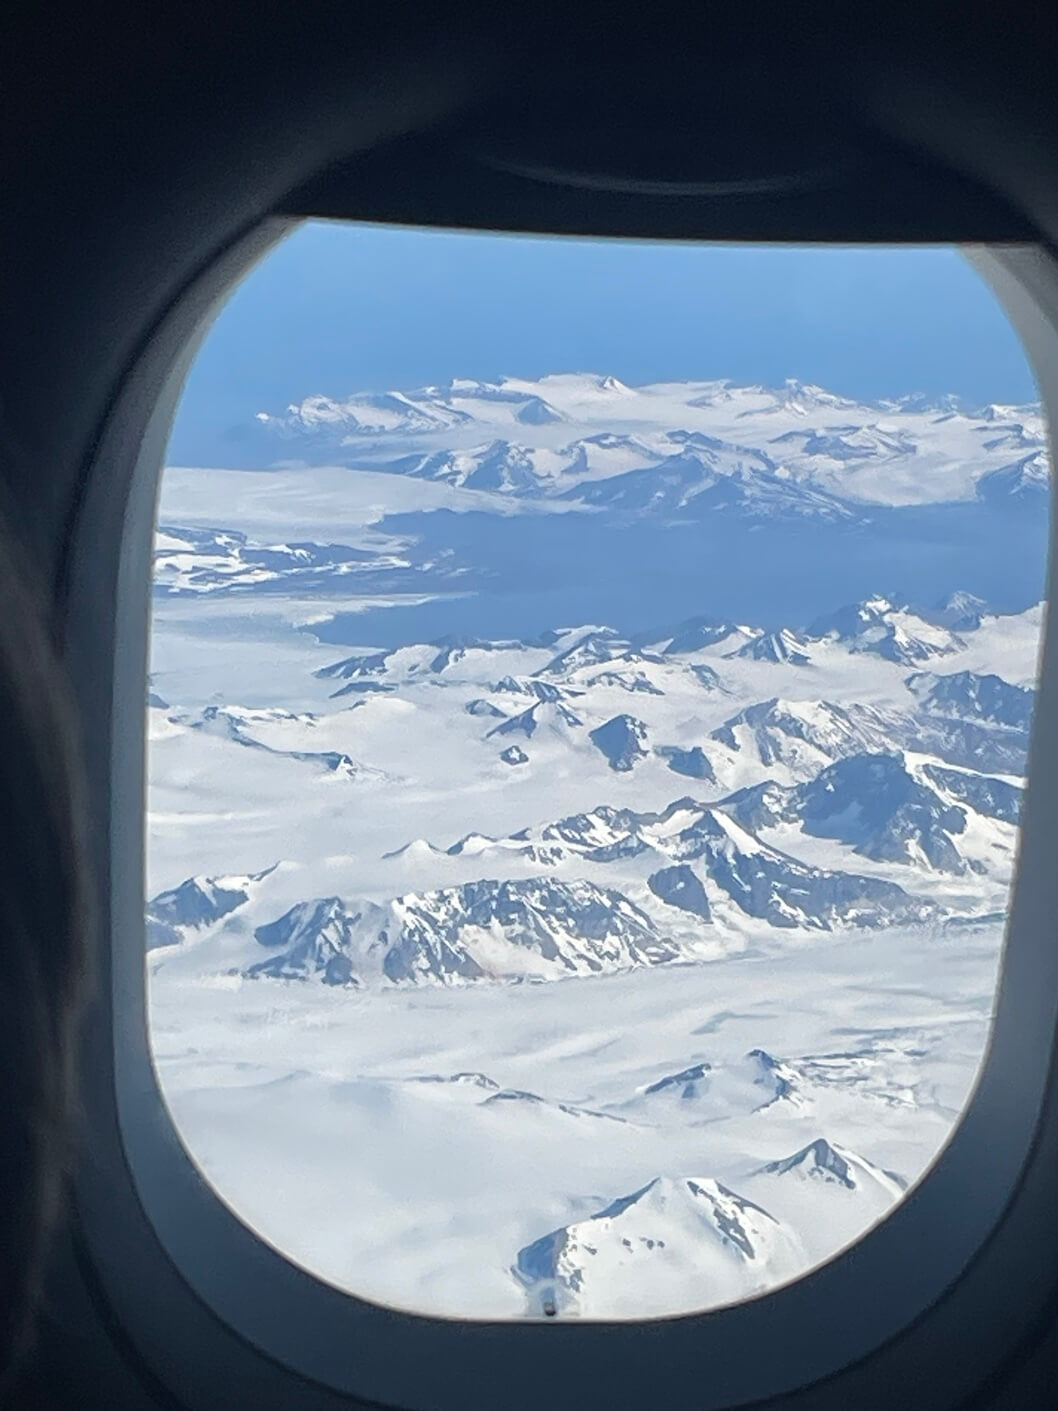 snowy peaks of Svalbard